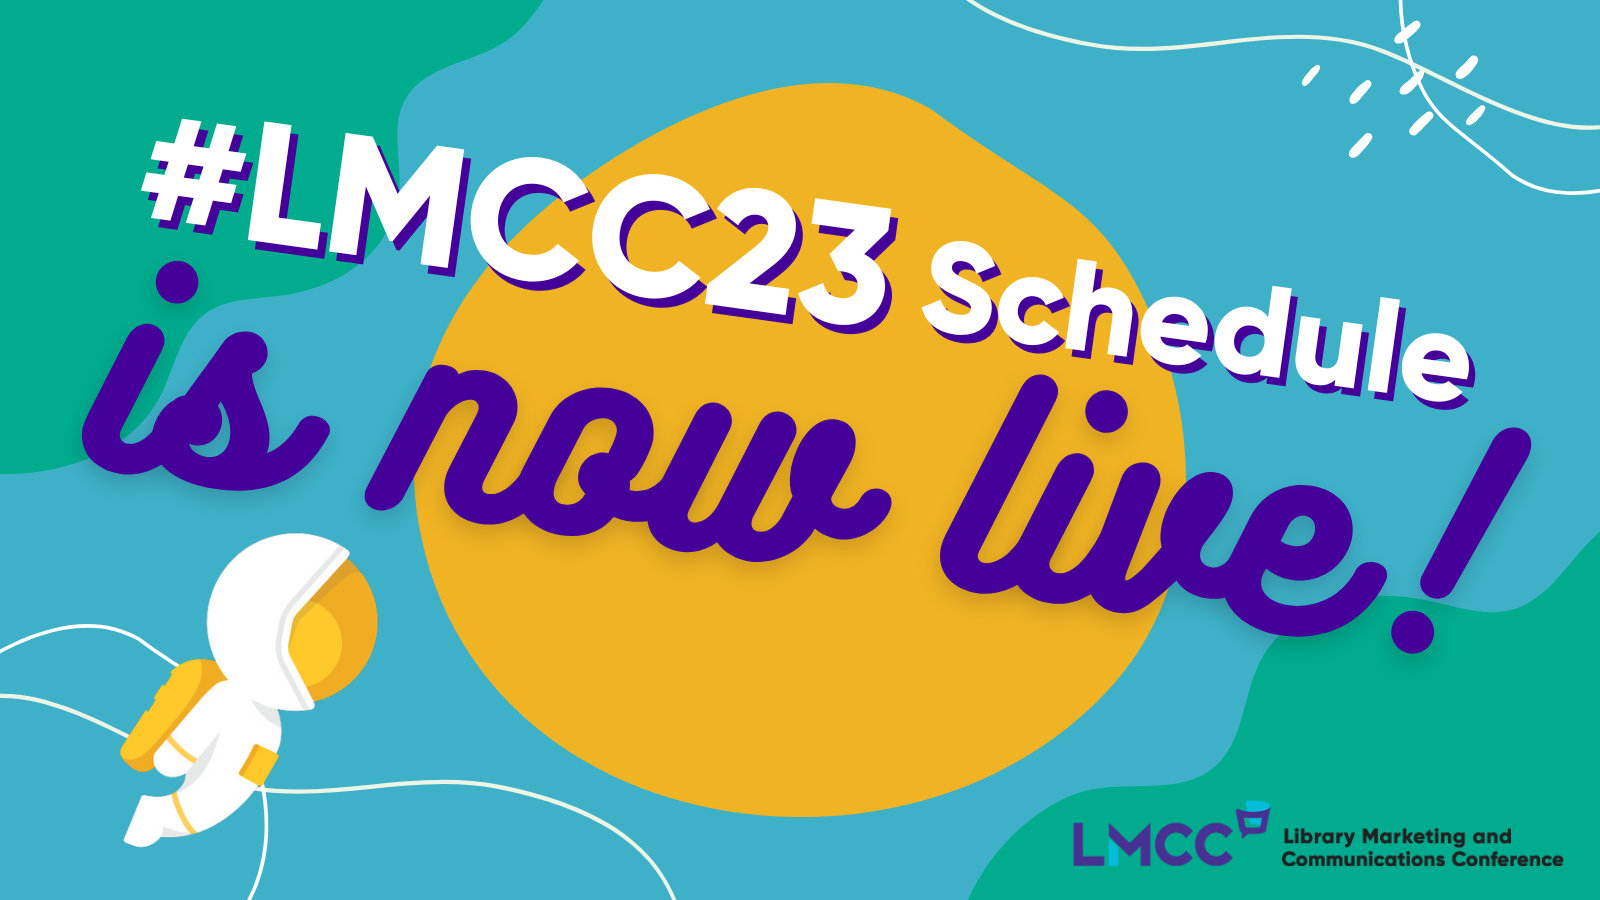 #LMCC23 Schedule is now live!